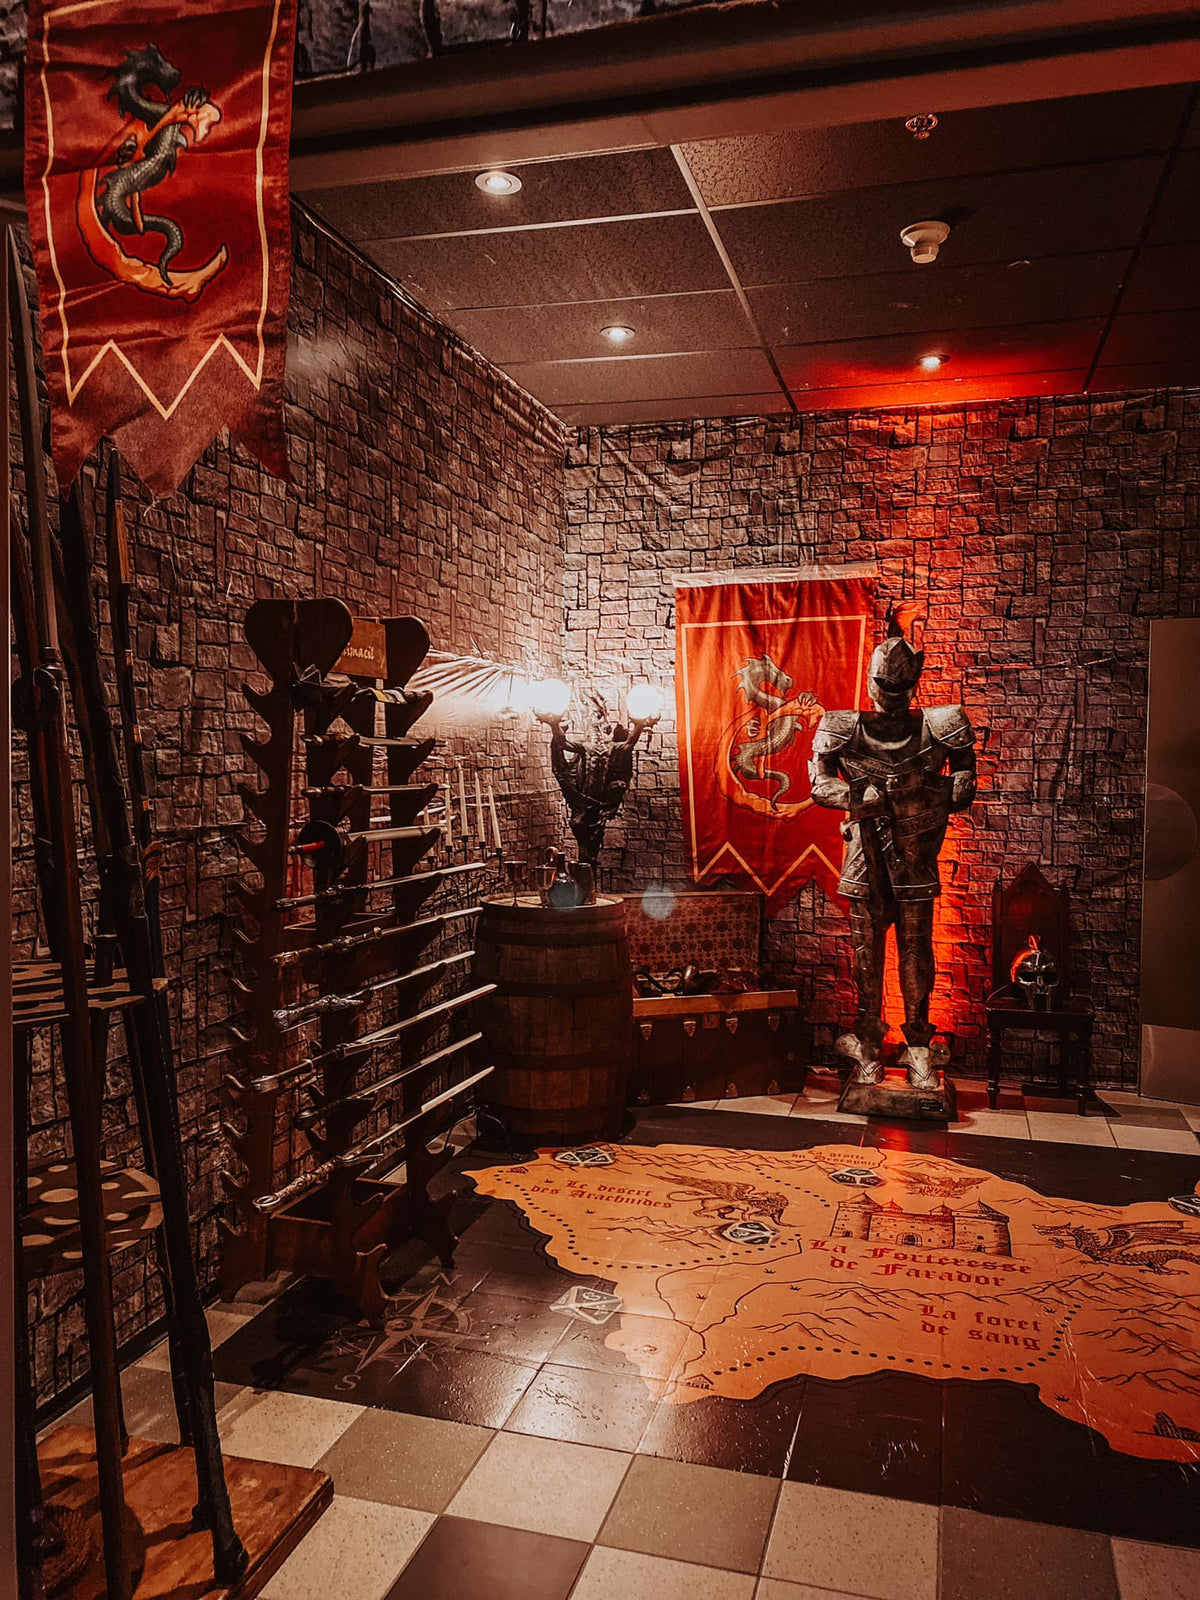 L'entrée de la salle de cinéma avec une carte au sol, des armes et une armure